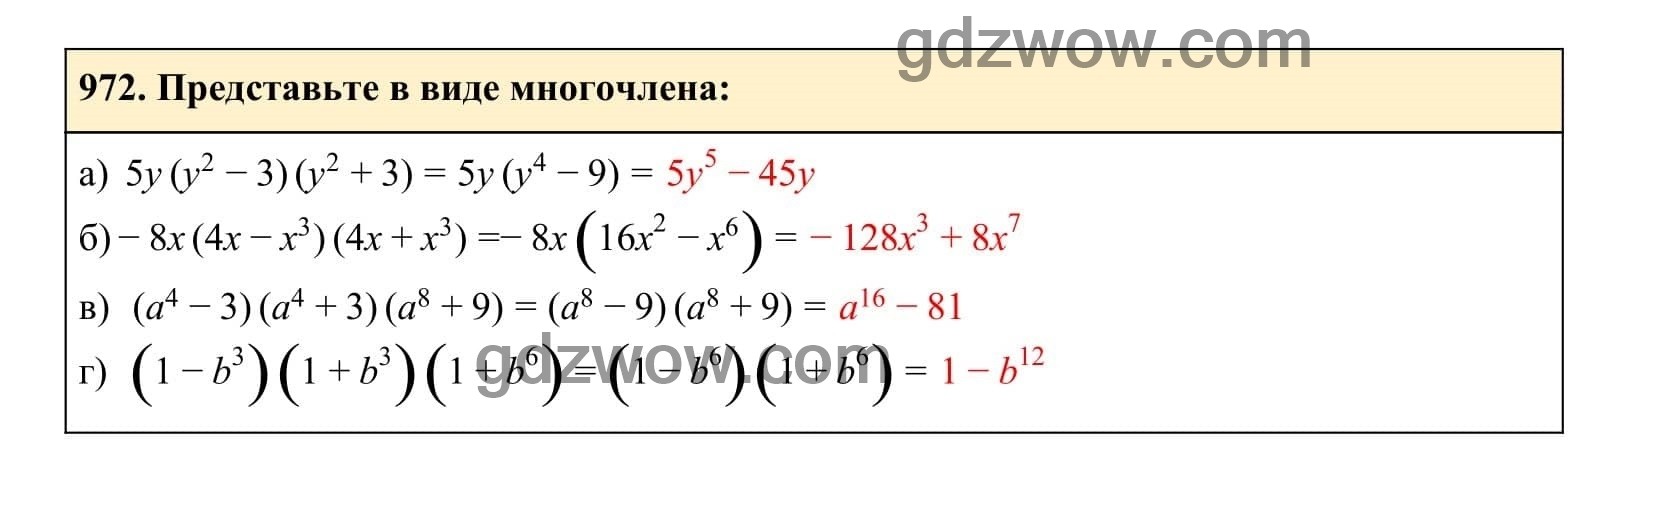 Упражнение 972 - ГДЗ по Алгебре 7 класс Учебник Макарычев (решебник) - GDZwow